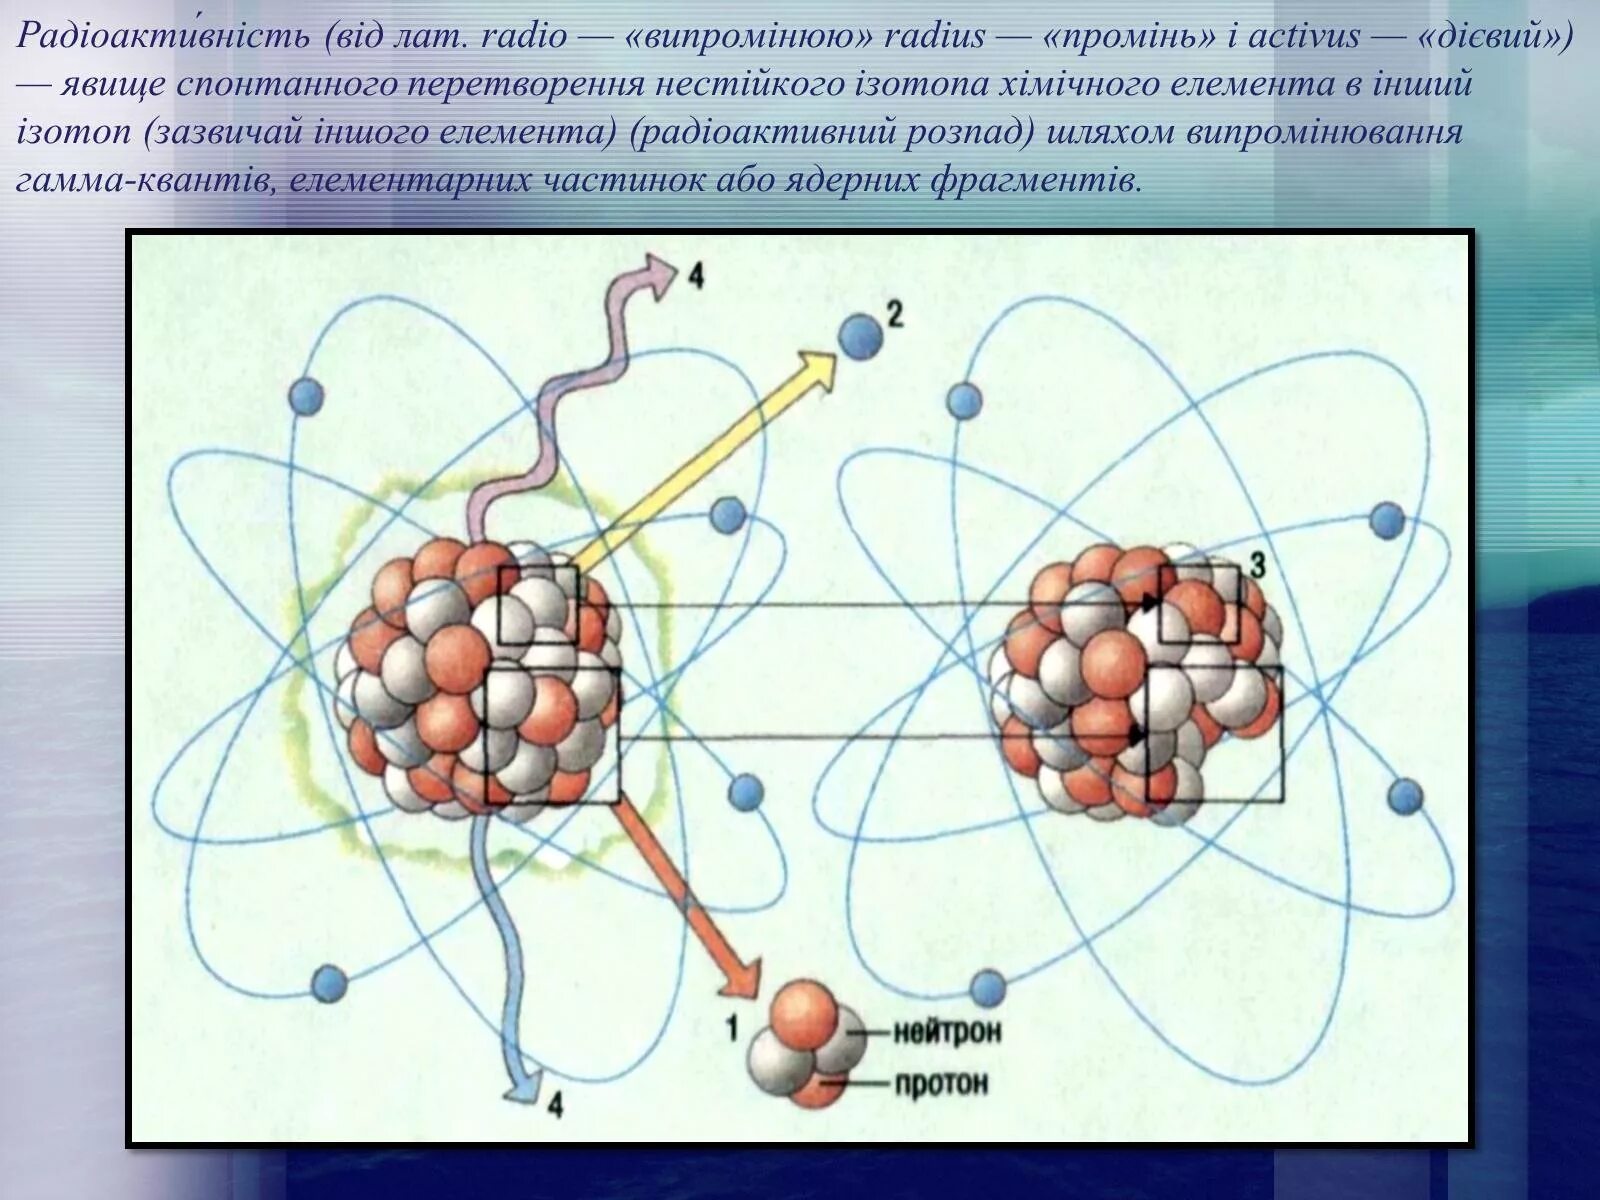 Альфа-, бета- и гамма- ионизирующих излучений. Атом радиации. Влияние радиации на атомы. Альфа бета гамма излучения.